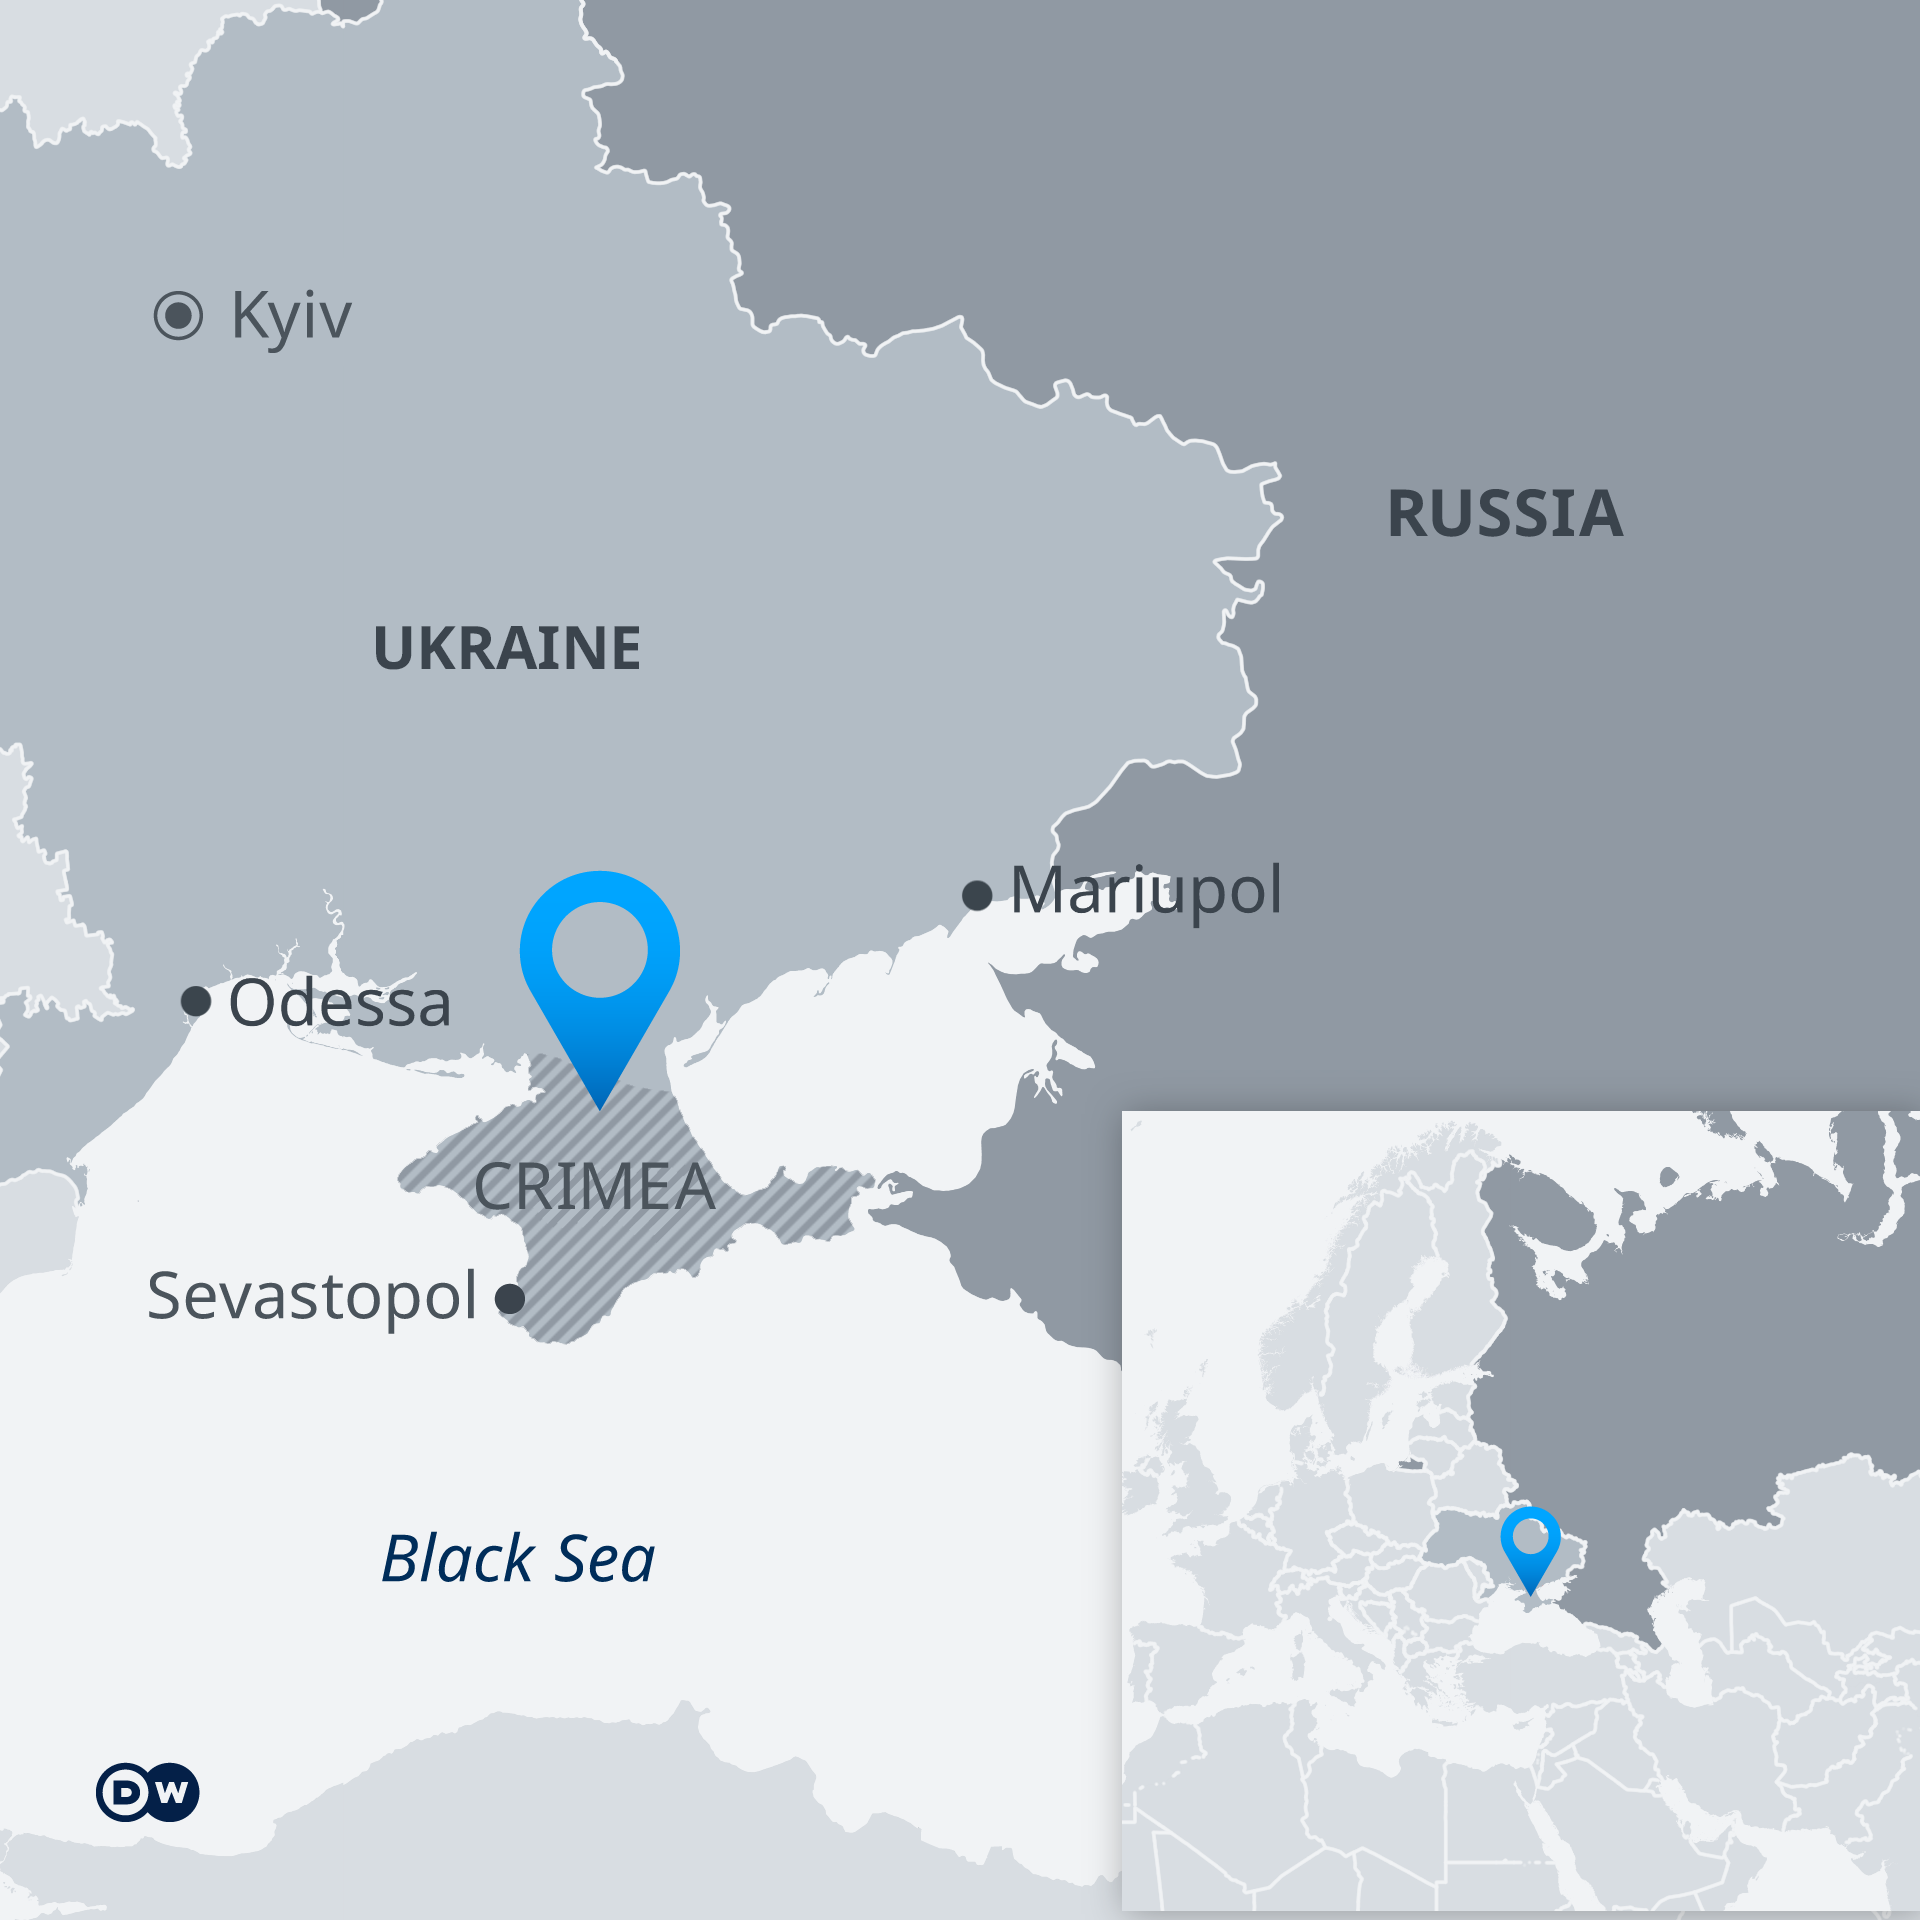 Eine Karte der Ukraine und Russlands mit der Krim als separatem Gebiet